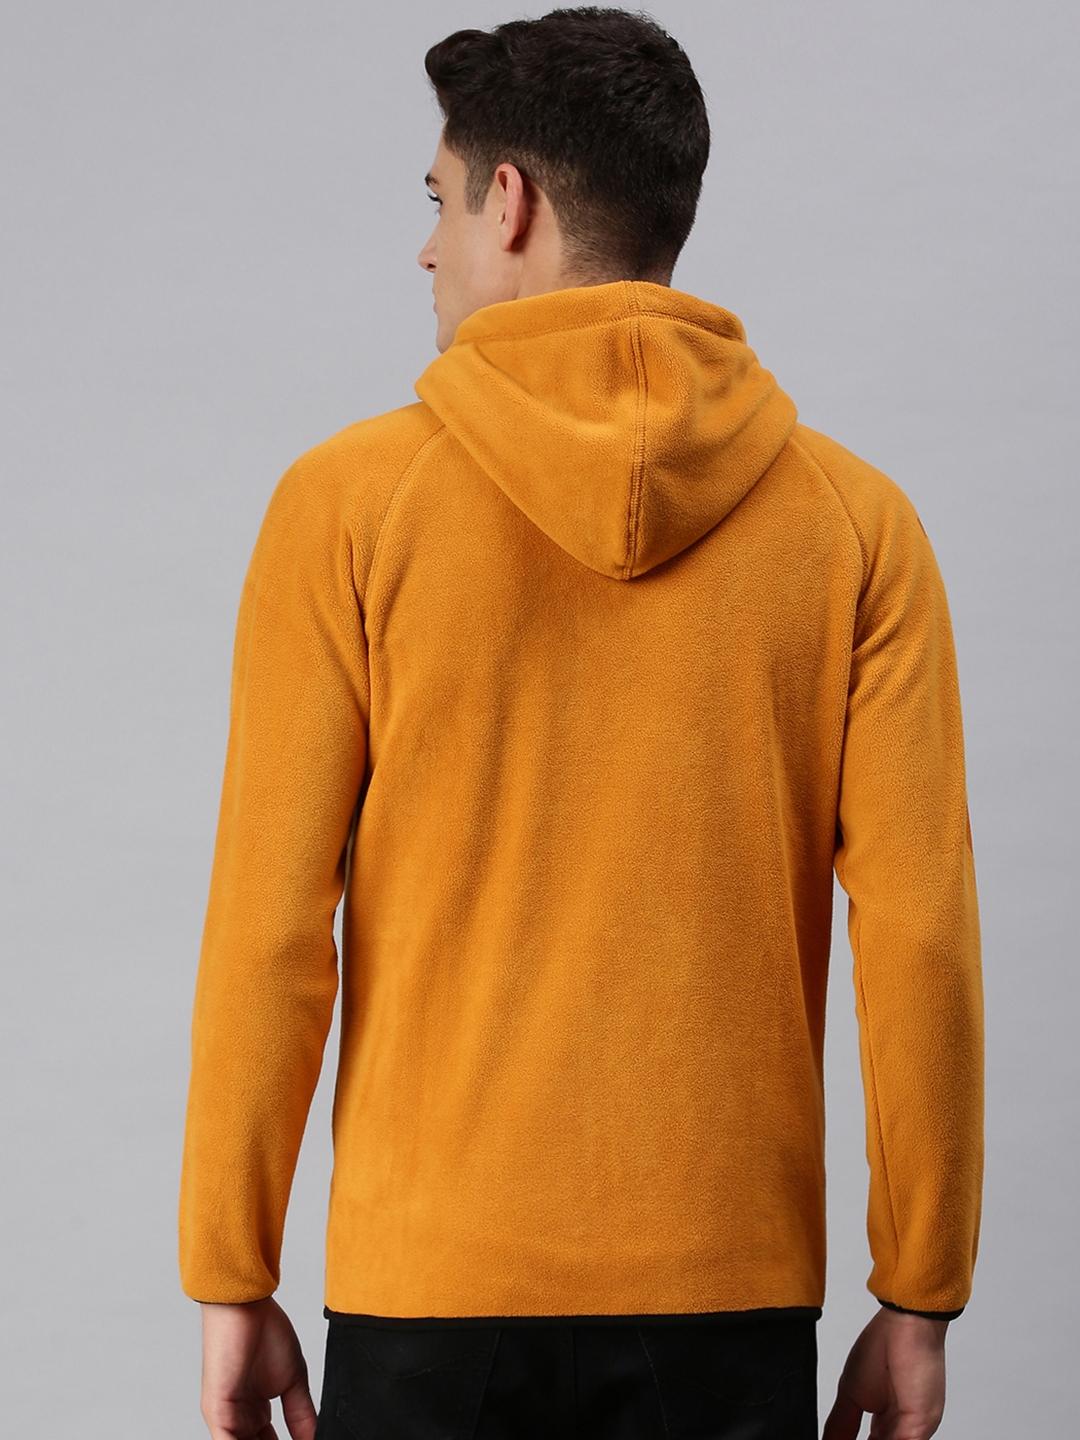 Men's Yellow Fur Solid Hoodies